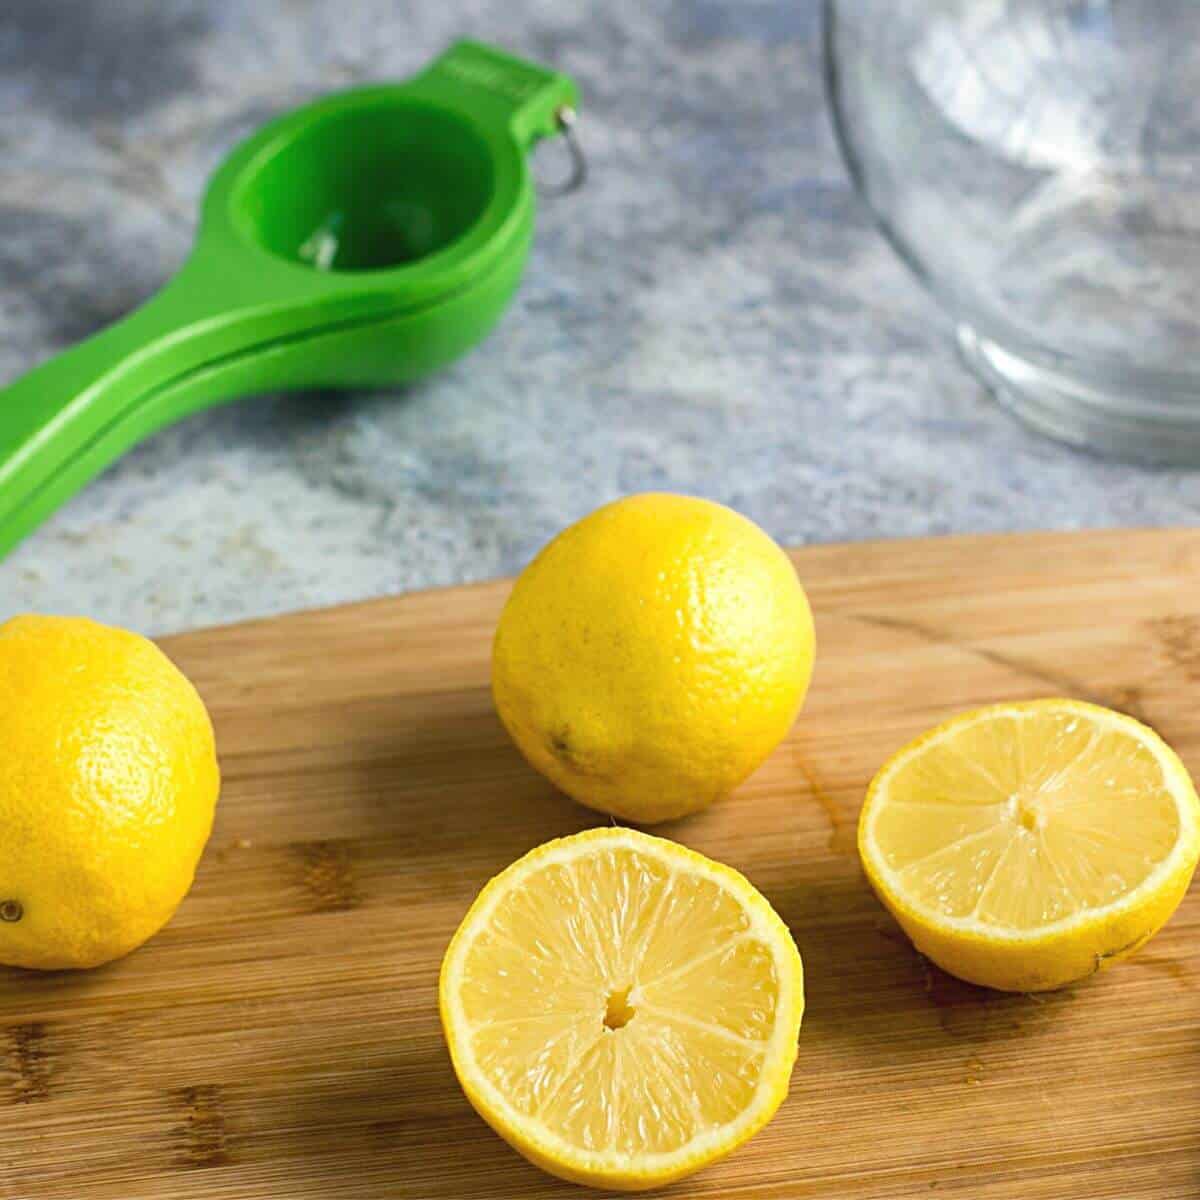 lemons sliced on board with juicer.